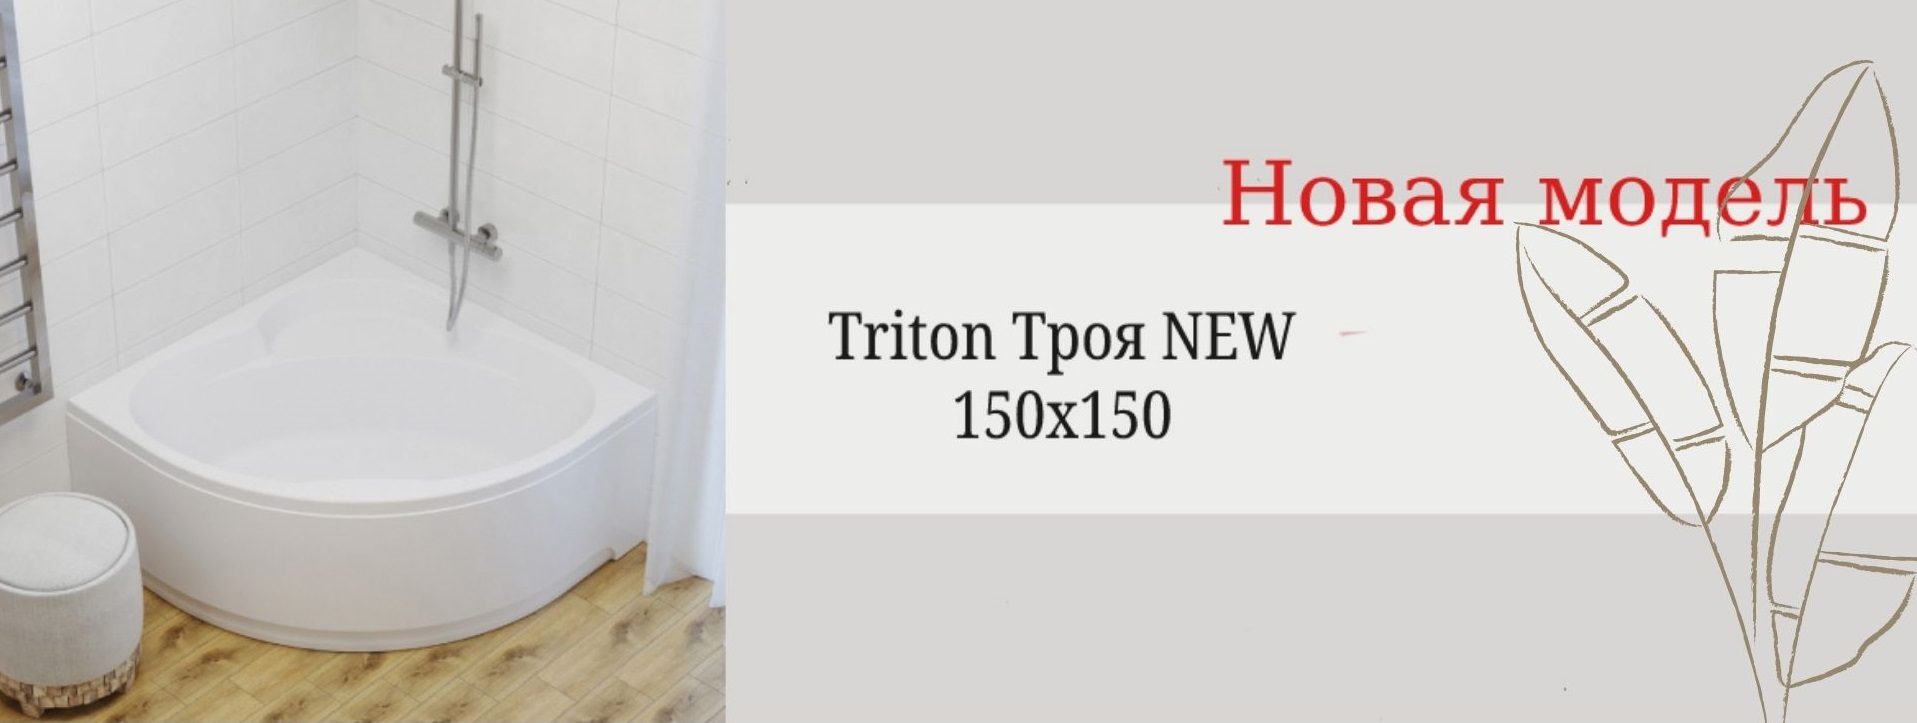 Новая модель - Triton Троя New 150x150